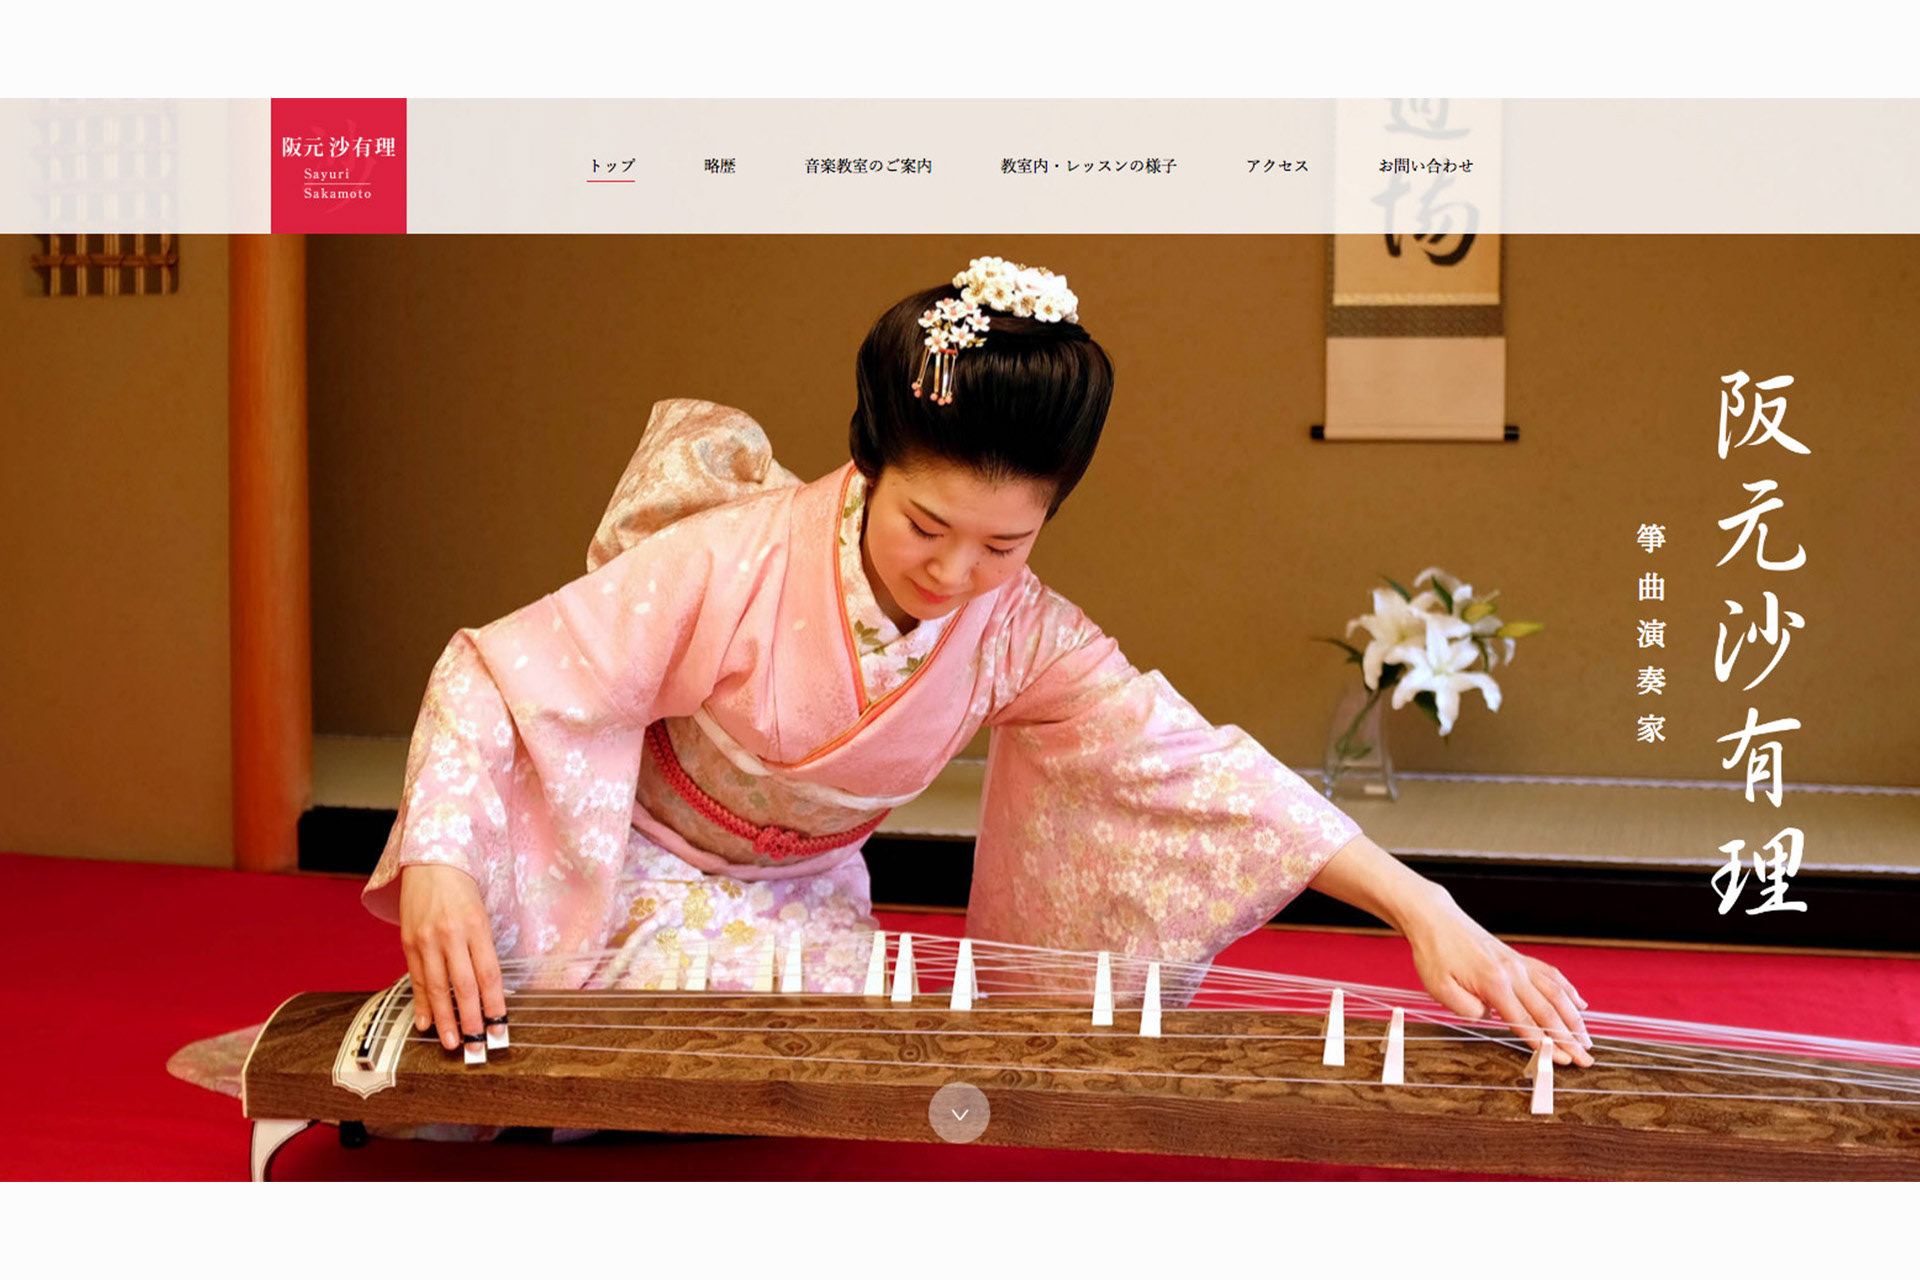  Koncert na tradicionalnim instrumentima  Japana